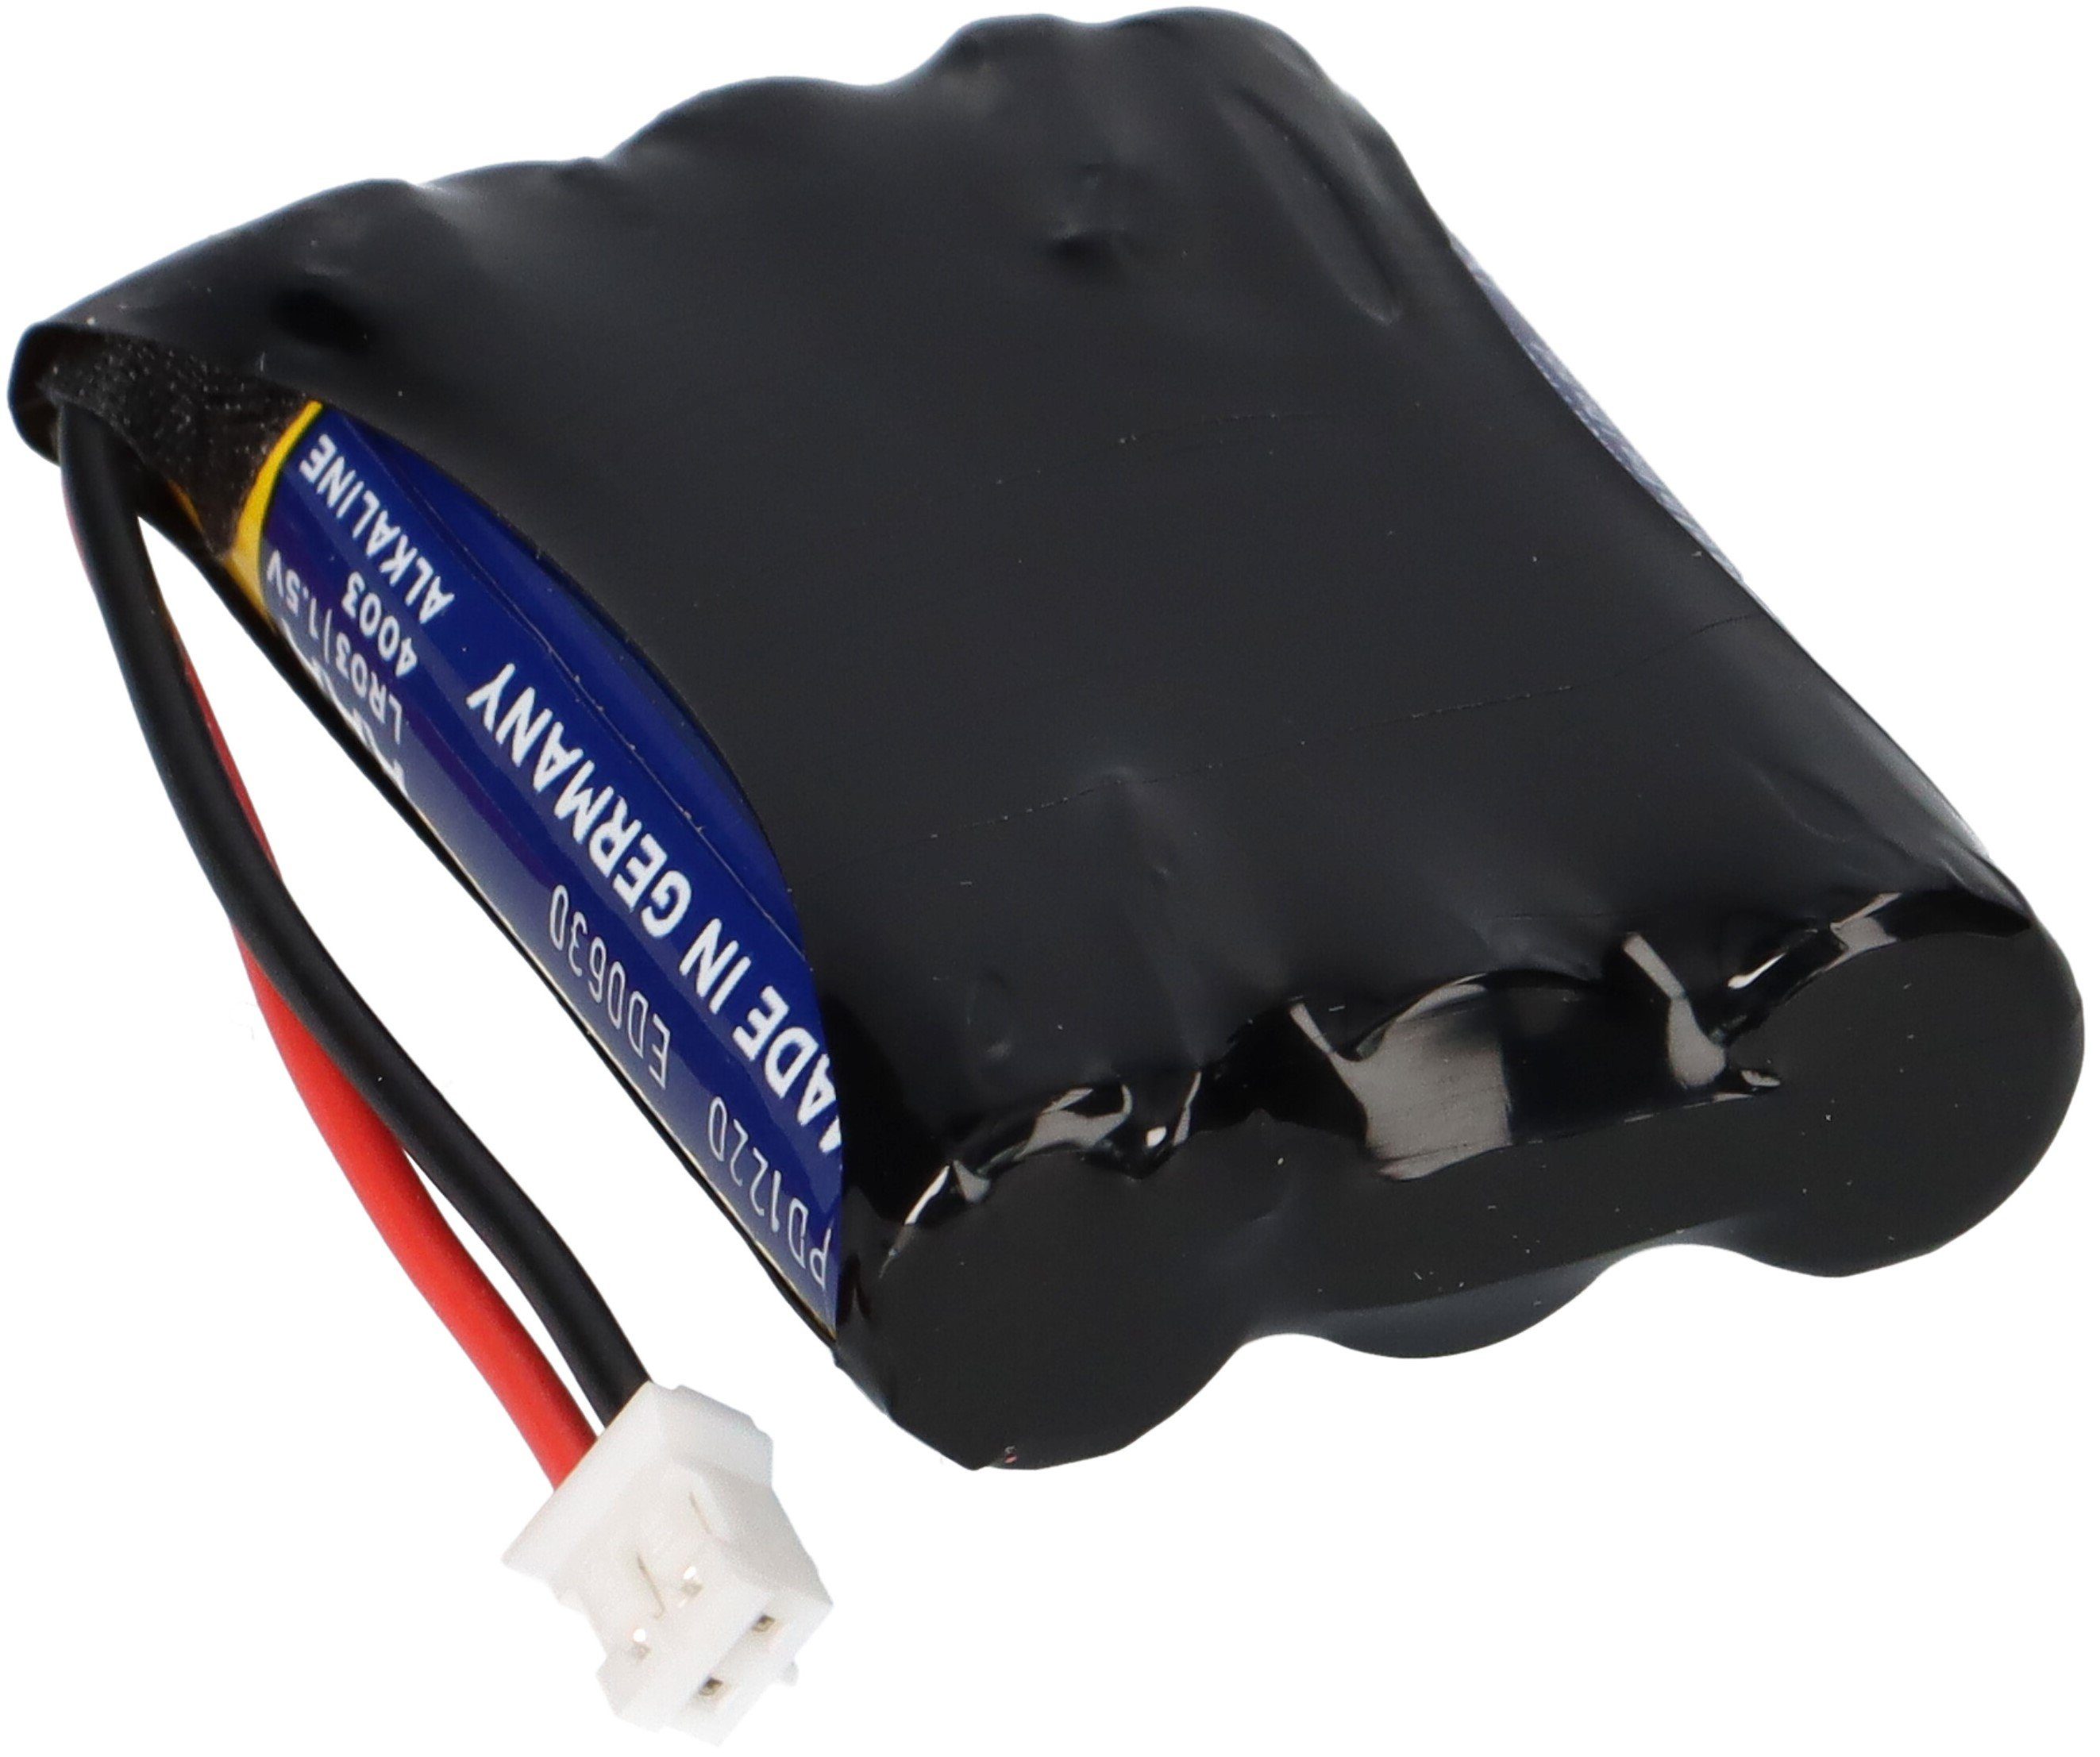 Akkuman Batteriepack kompatibel Safe-O-Tronic 38400200 4,5V Micro AAA Batterie